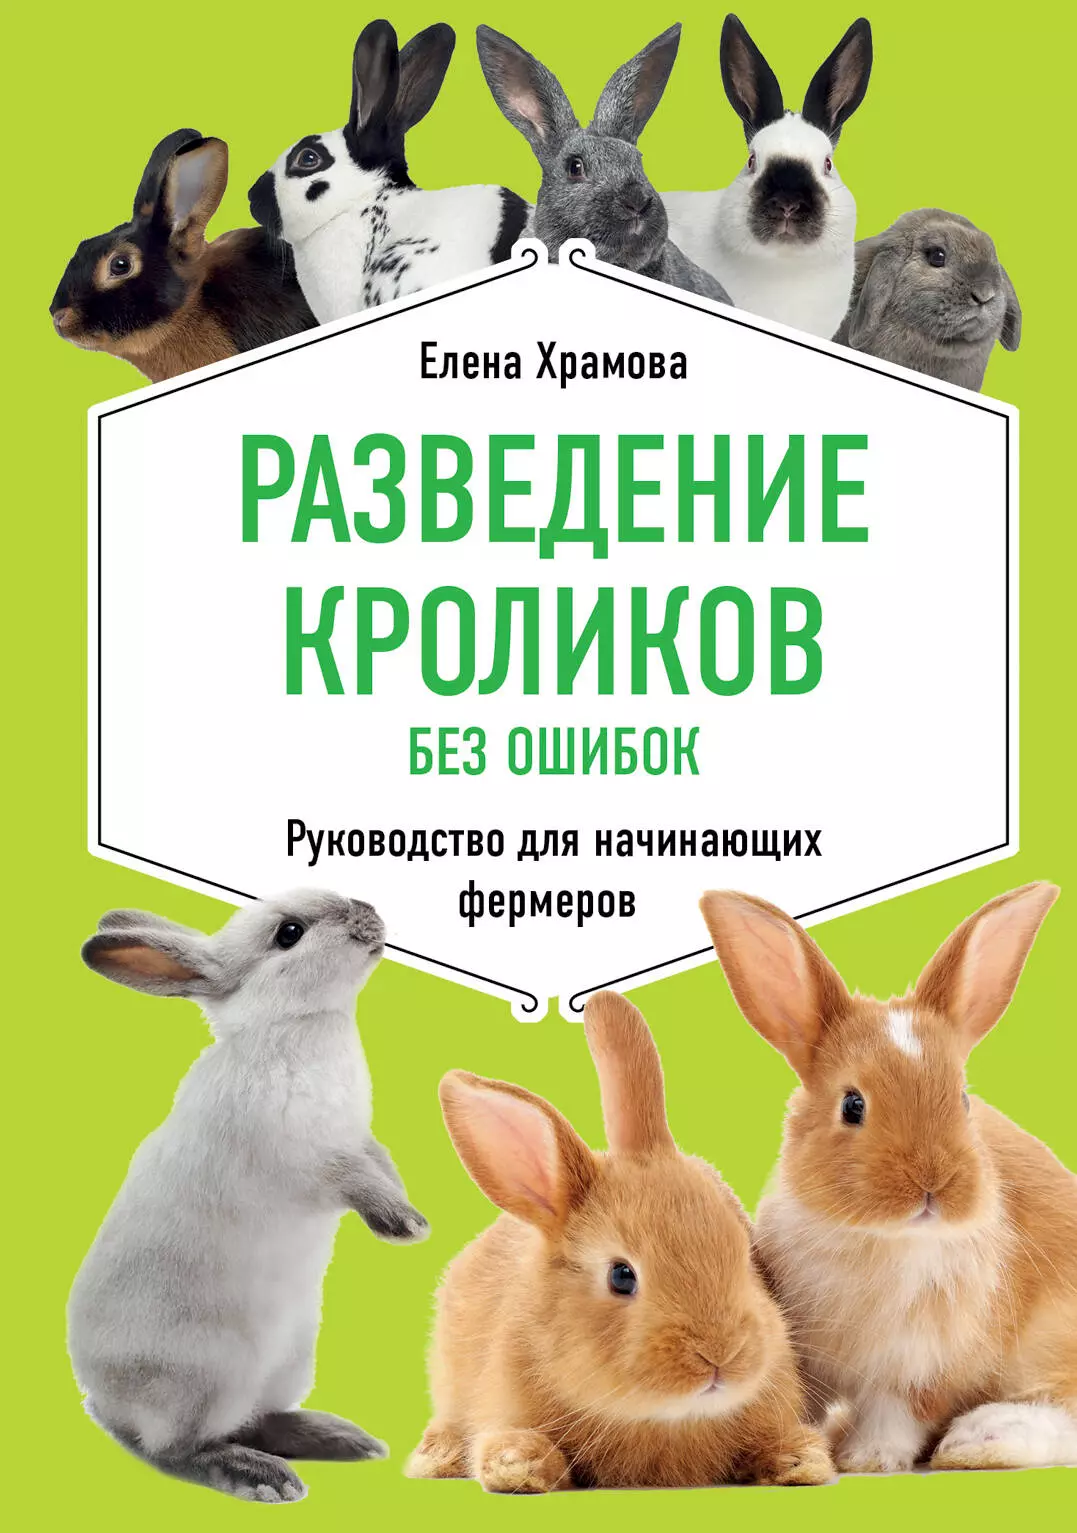 Храмова Елена Юрьевна - Разведение кроликов без ошибок. Руководство для начинающих фермеров